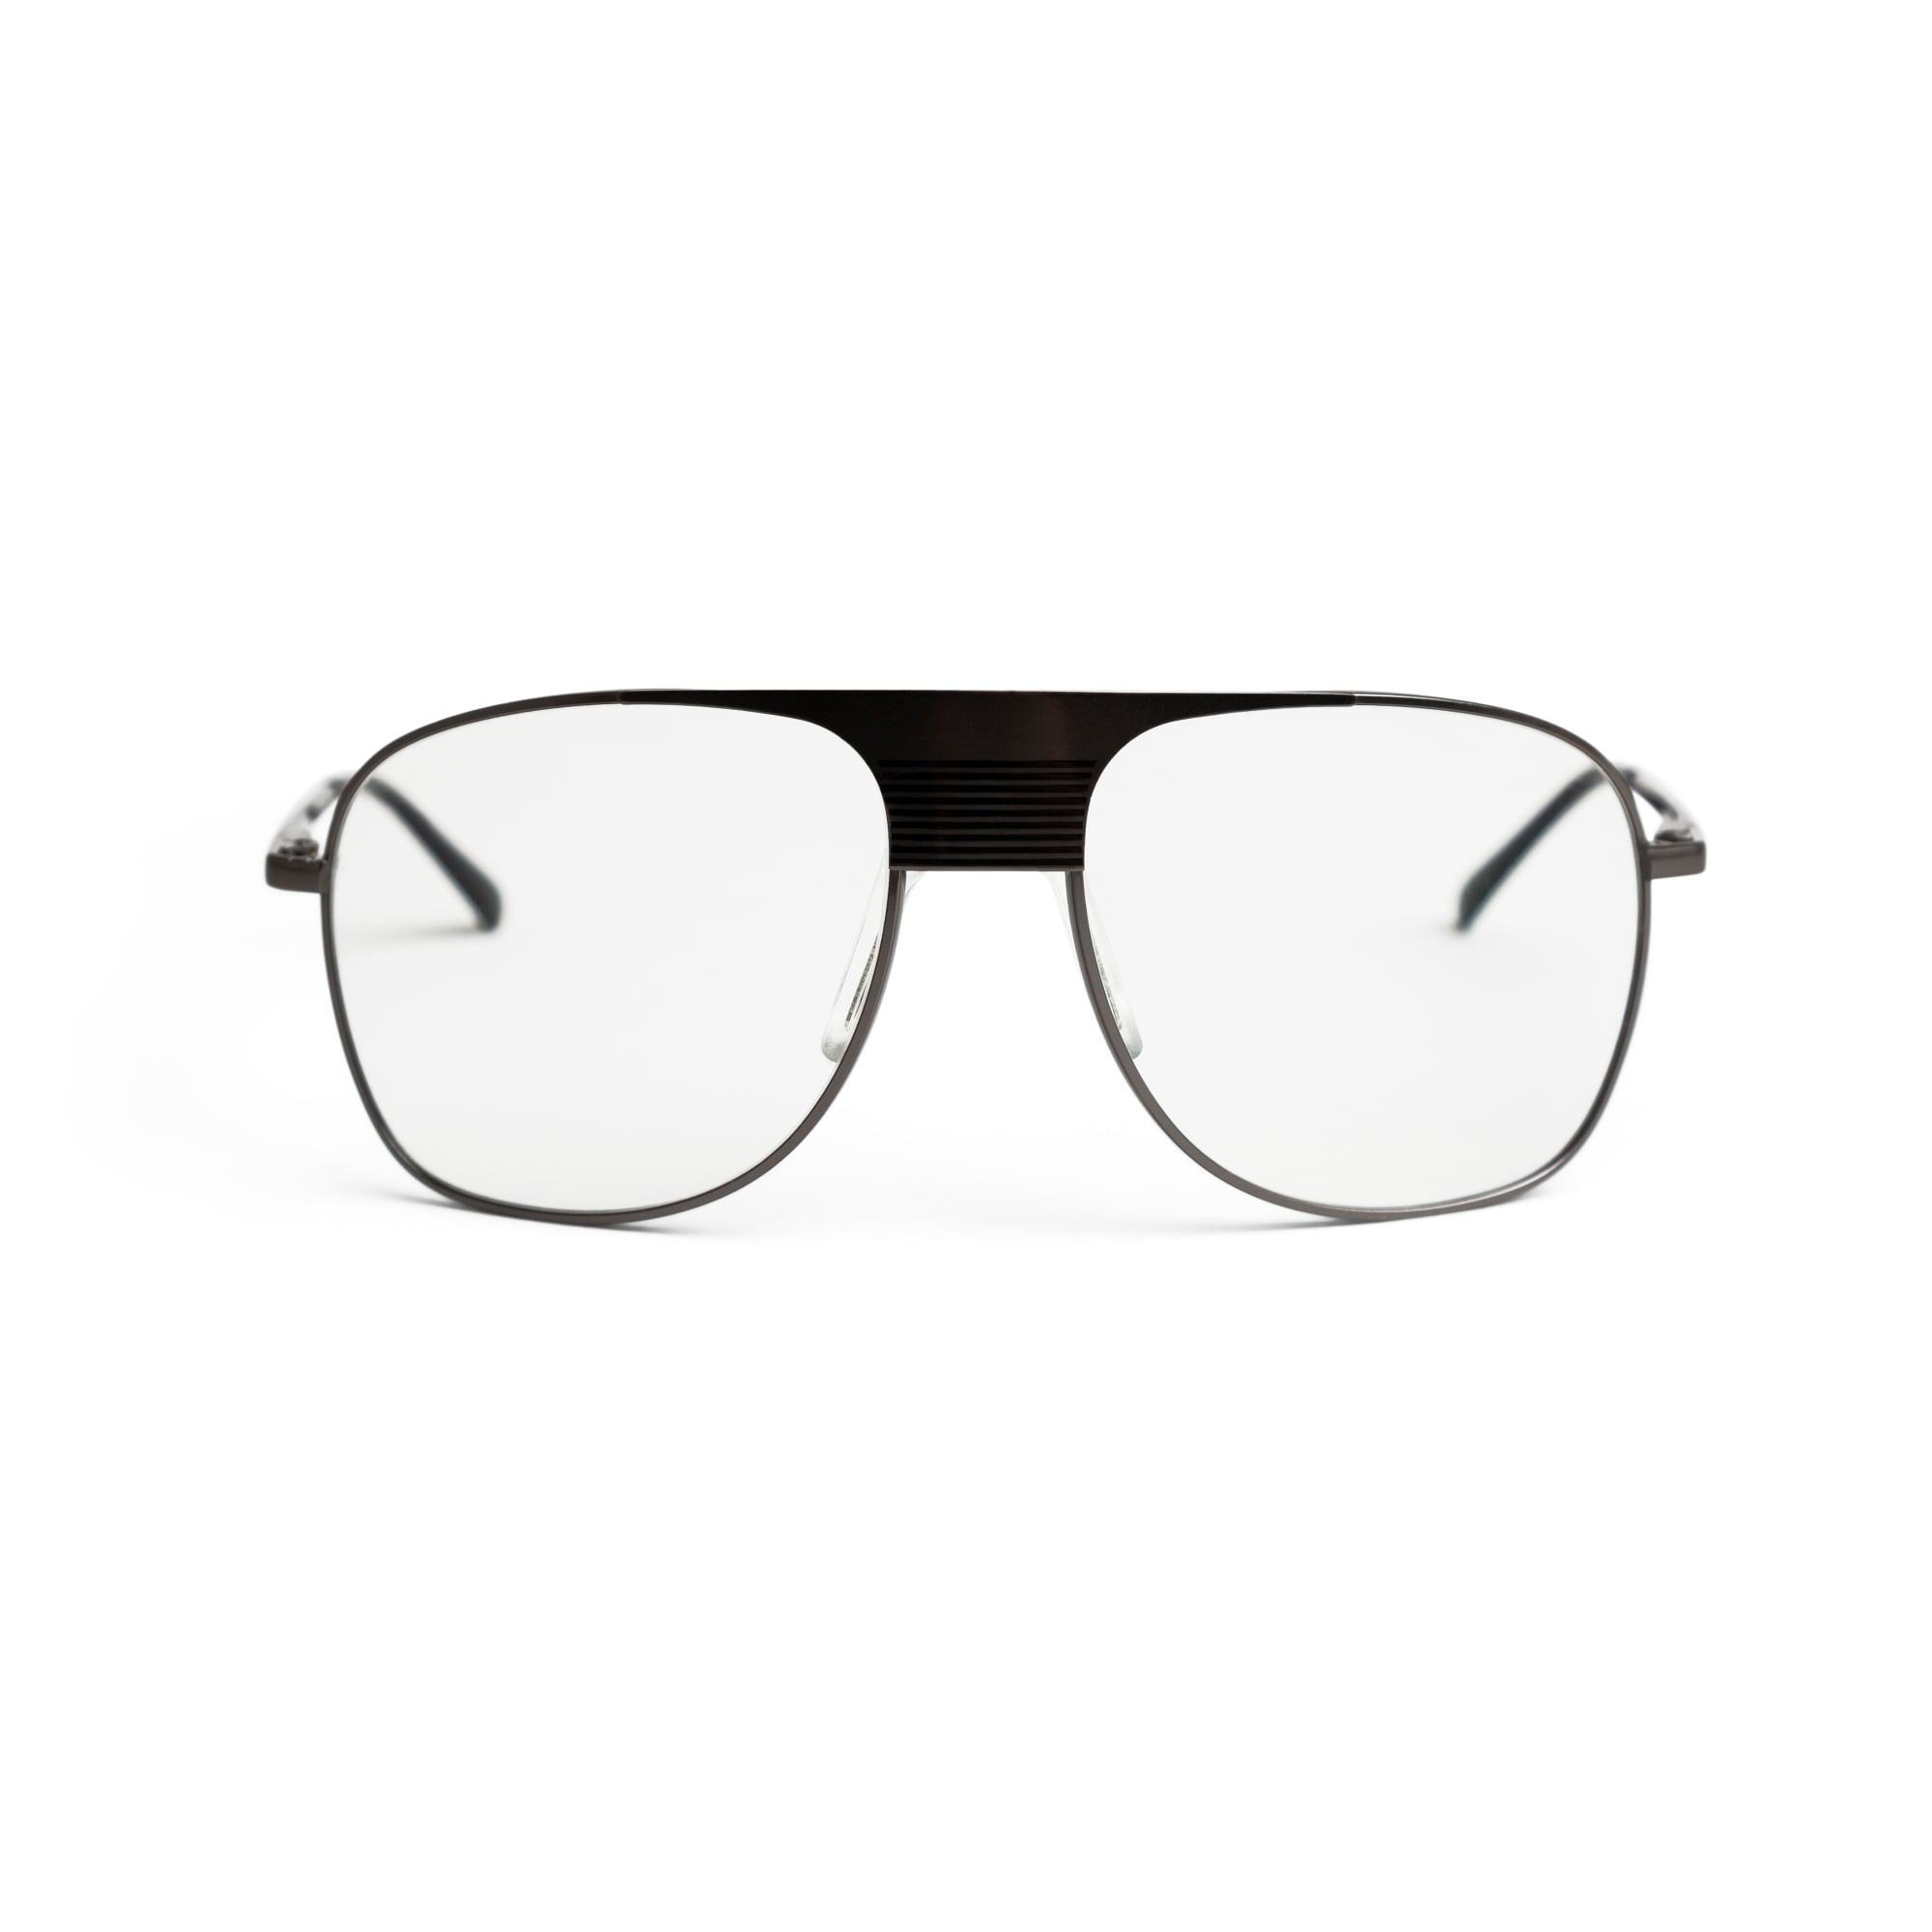 UK Trotting Glasses, Nova 1 -malli